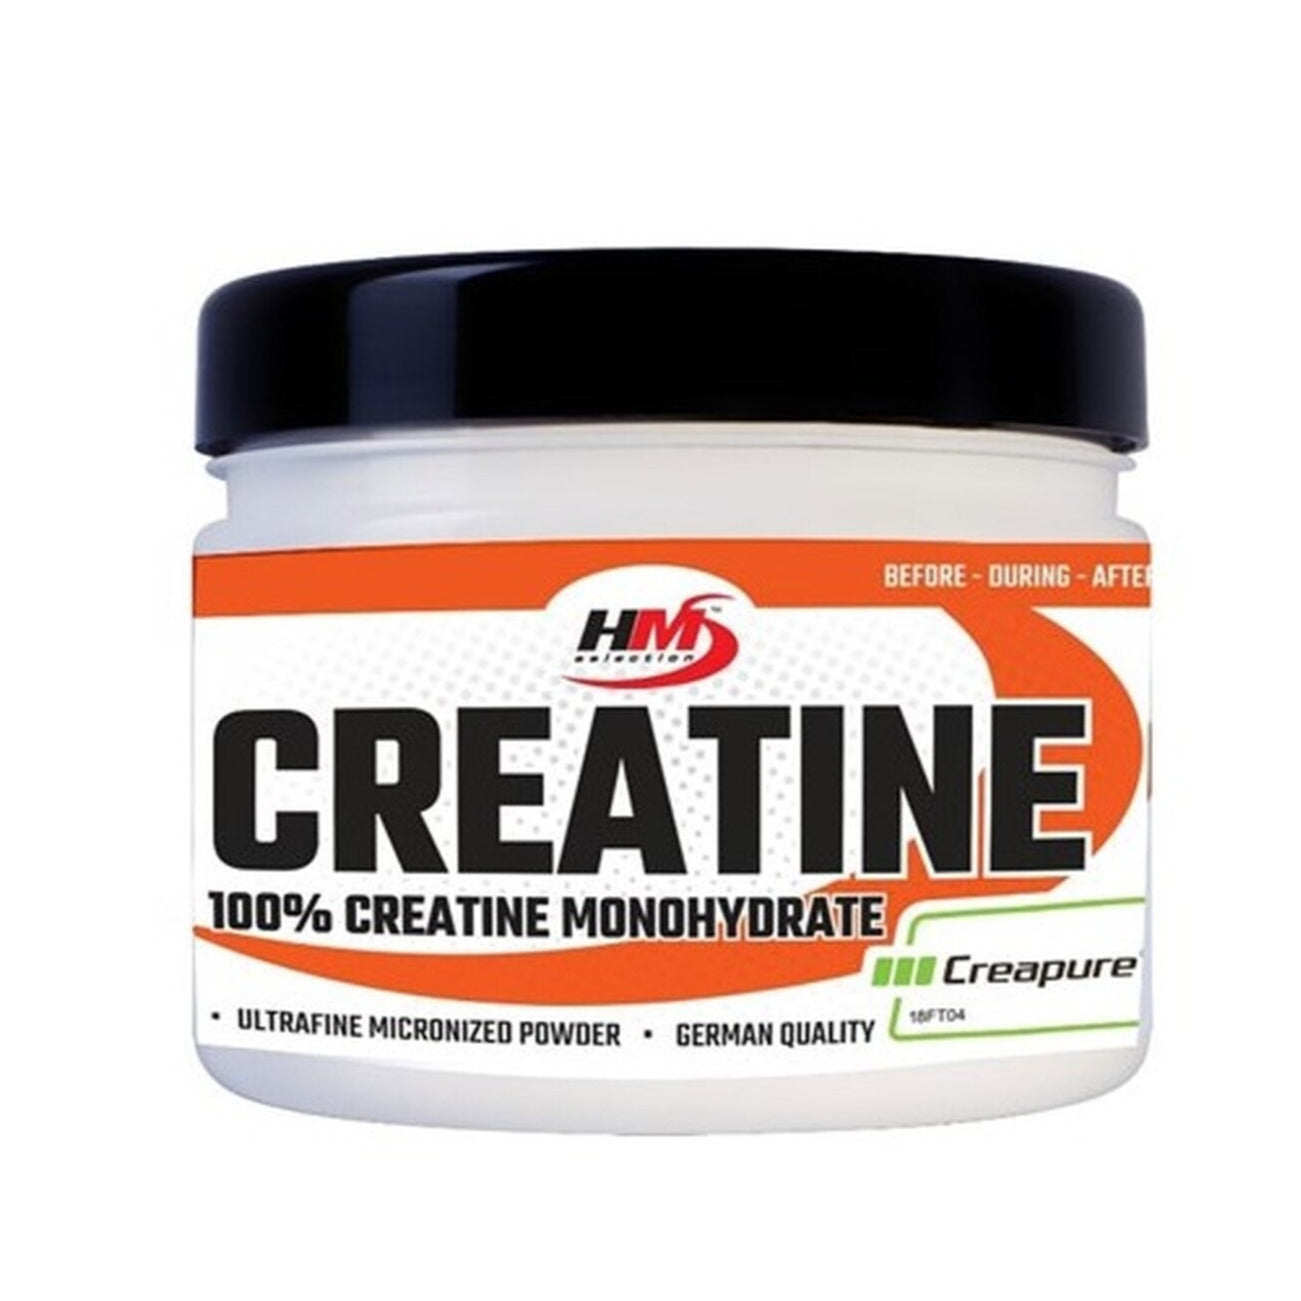 CREATINE 300g - Nahrungsergänzungsmittel mit Kreatinmonohydrat in mikronisierter Pulverform für intensives Training 